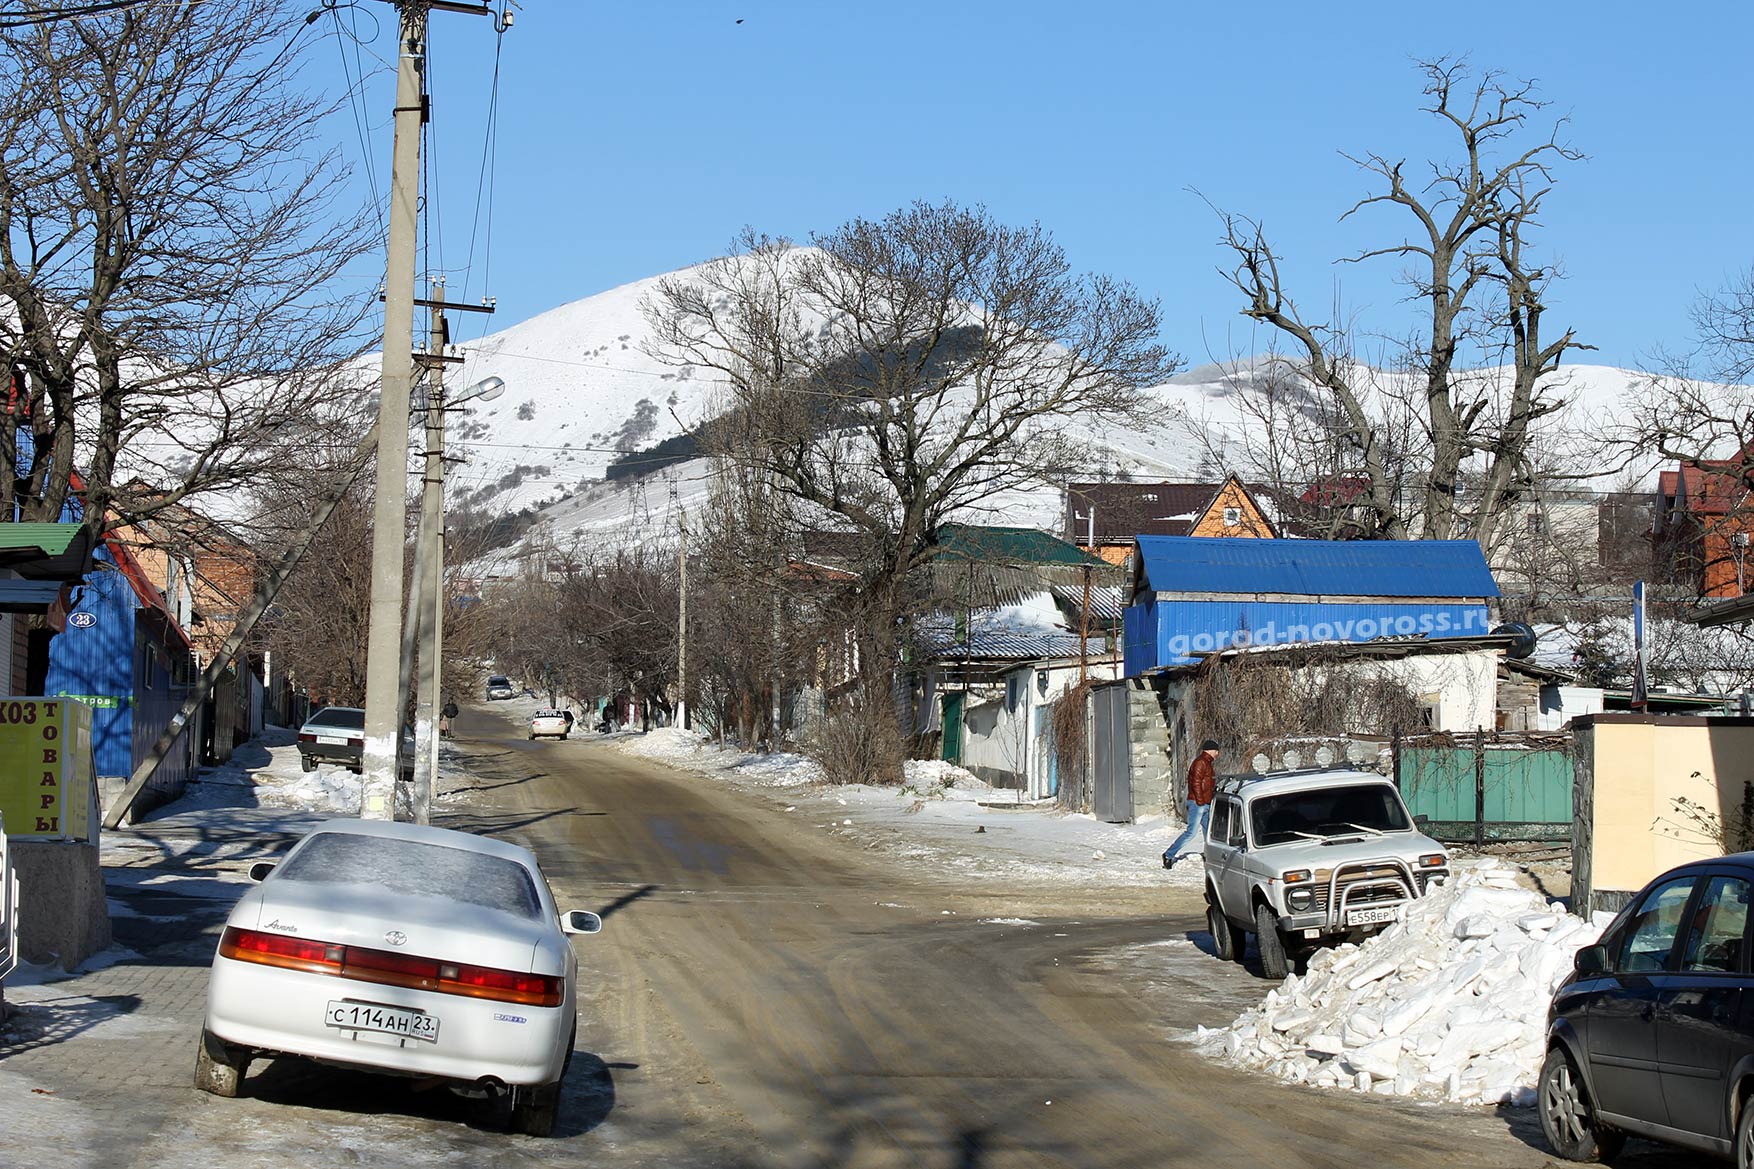 Улица Кирова с видом на горы в снегу. Зима 2014. Новороссийск